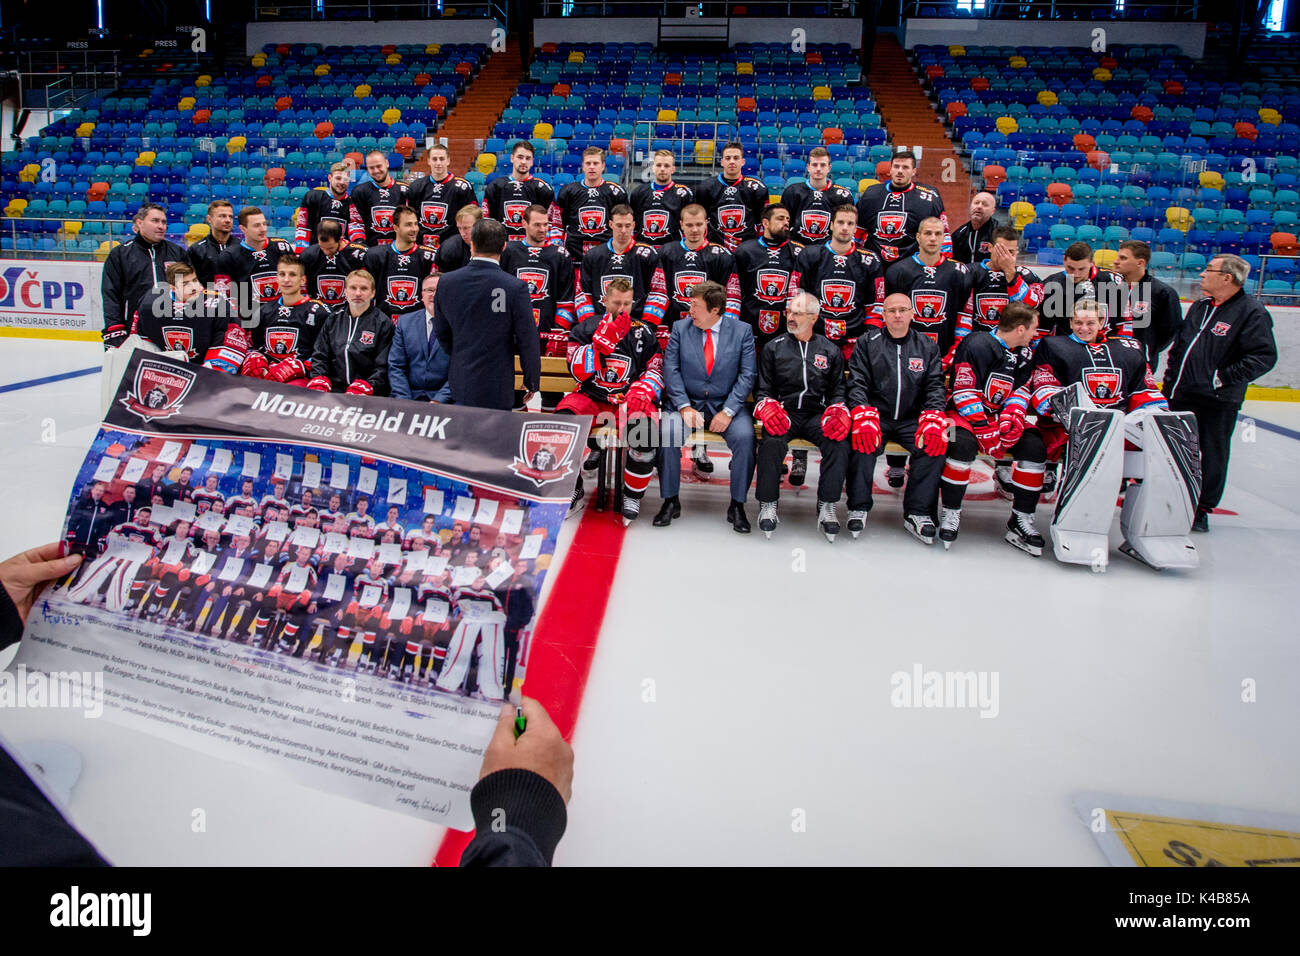 Hradec Kralove, République tchèque. 05 Sep, 2017. L'équipe de hockey sur glace tchèque Hradec Kralove Mountfield pose pour la photo de famille avant la saison 2017-2018, la ligue supplémentaire à Hradec Kralove, République tchèque, le 5 septembre 2017. Photo : CTK/Tanecek Photo/Alamy Live News Banque D'Images